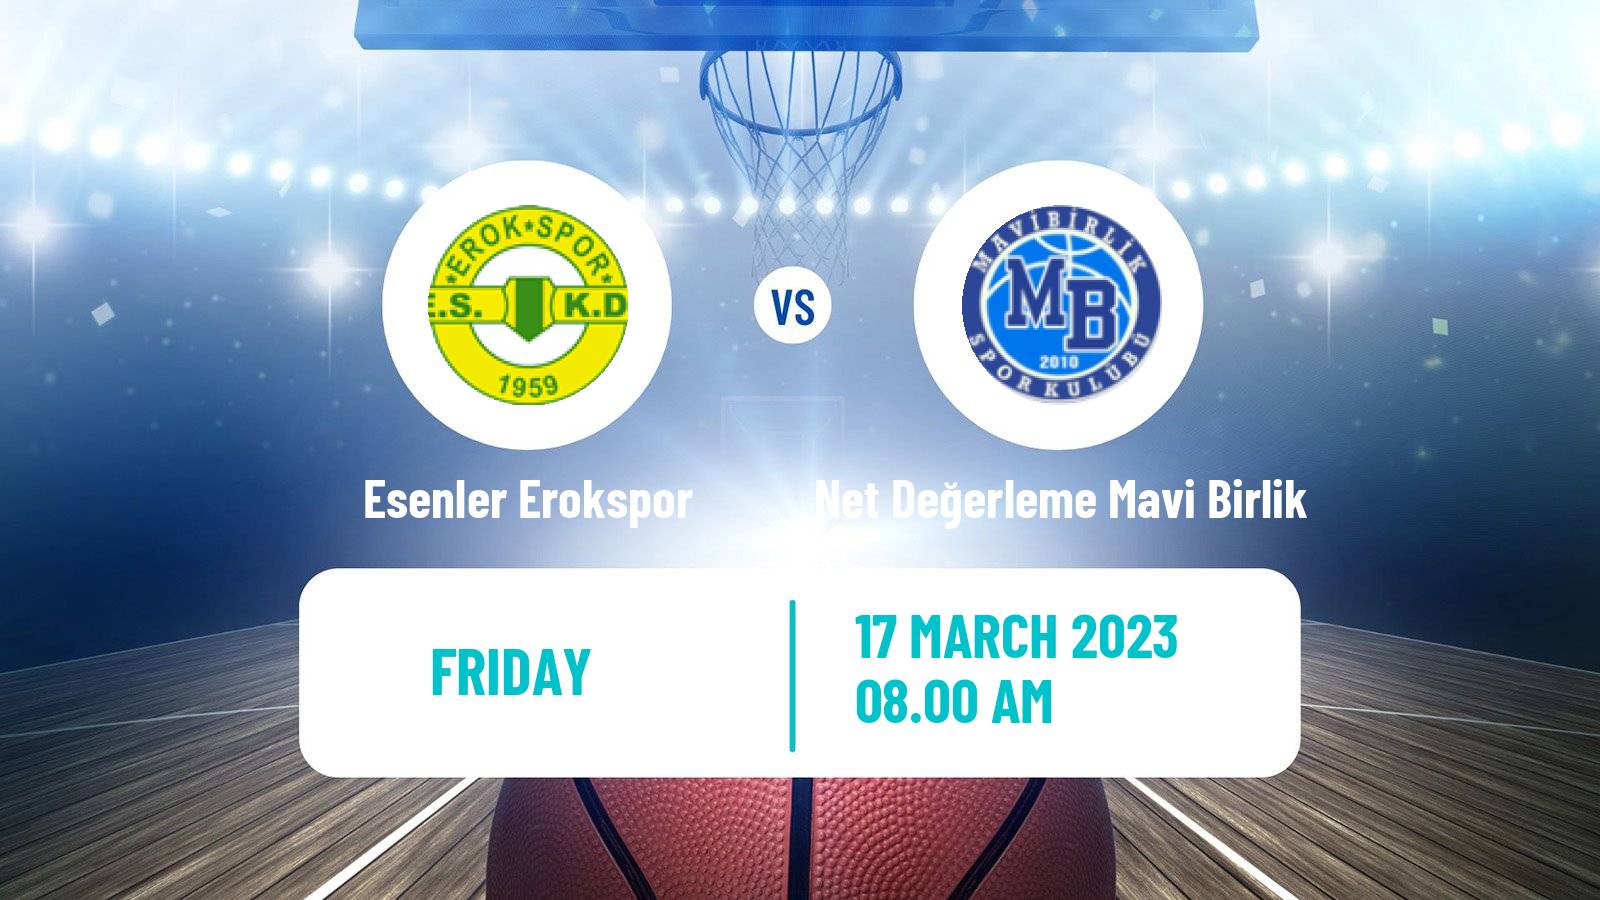 Basketball Turkish TB2L Esenler Erokspor - Net Değerleme Mavi Birlik